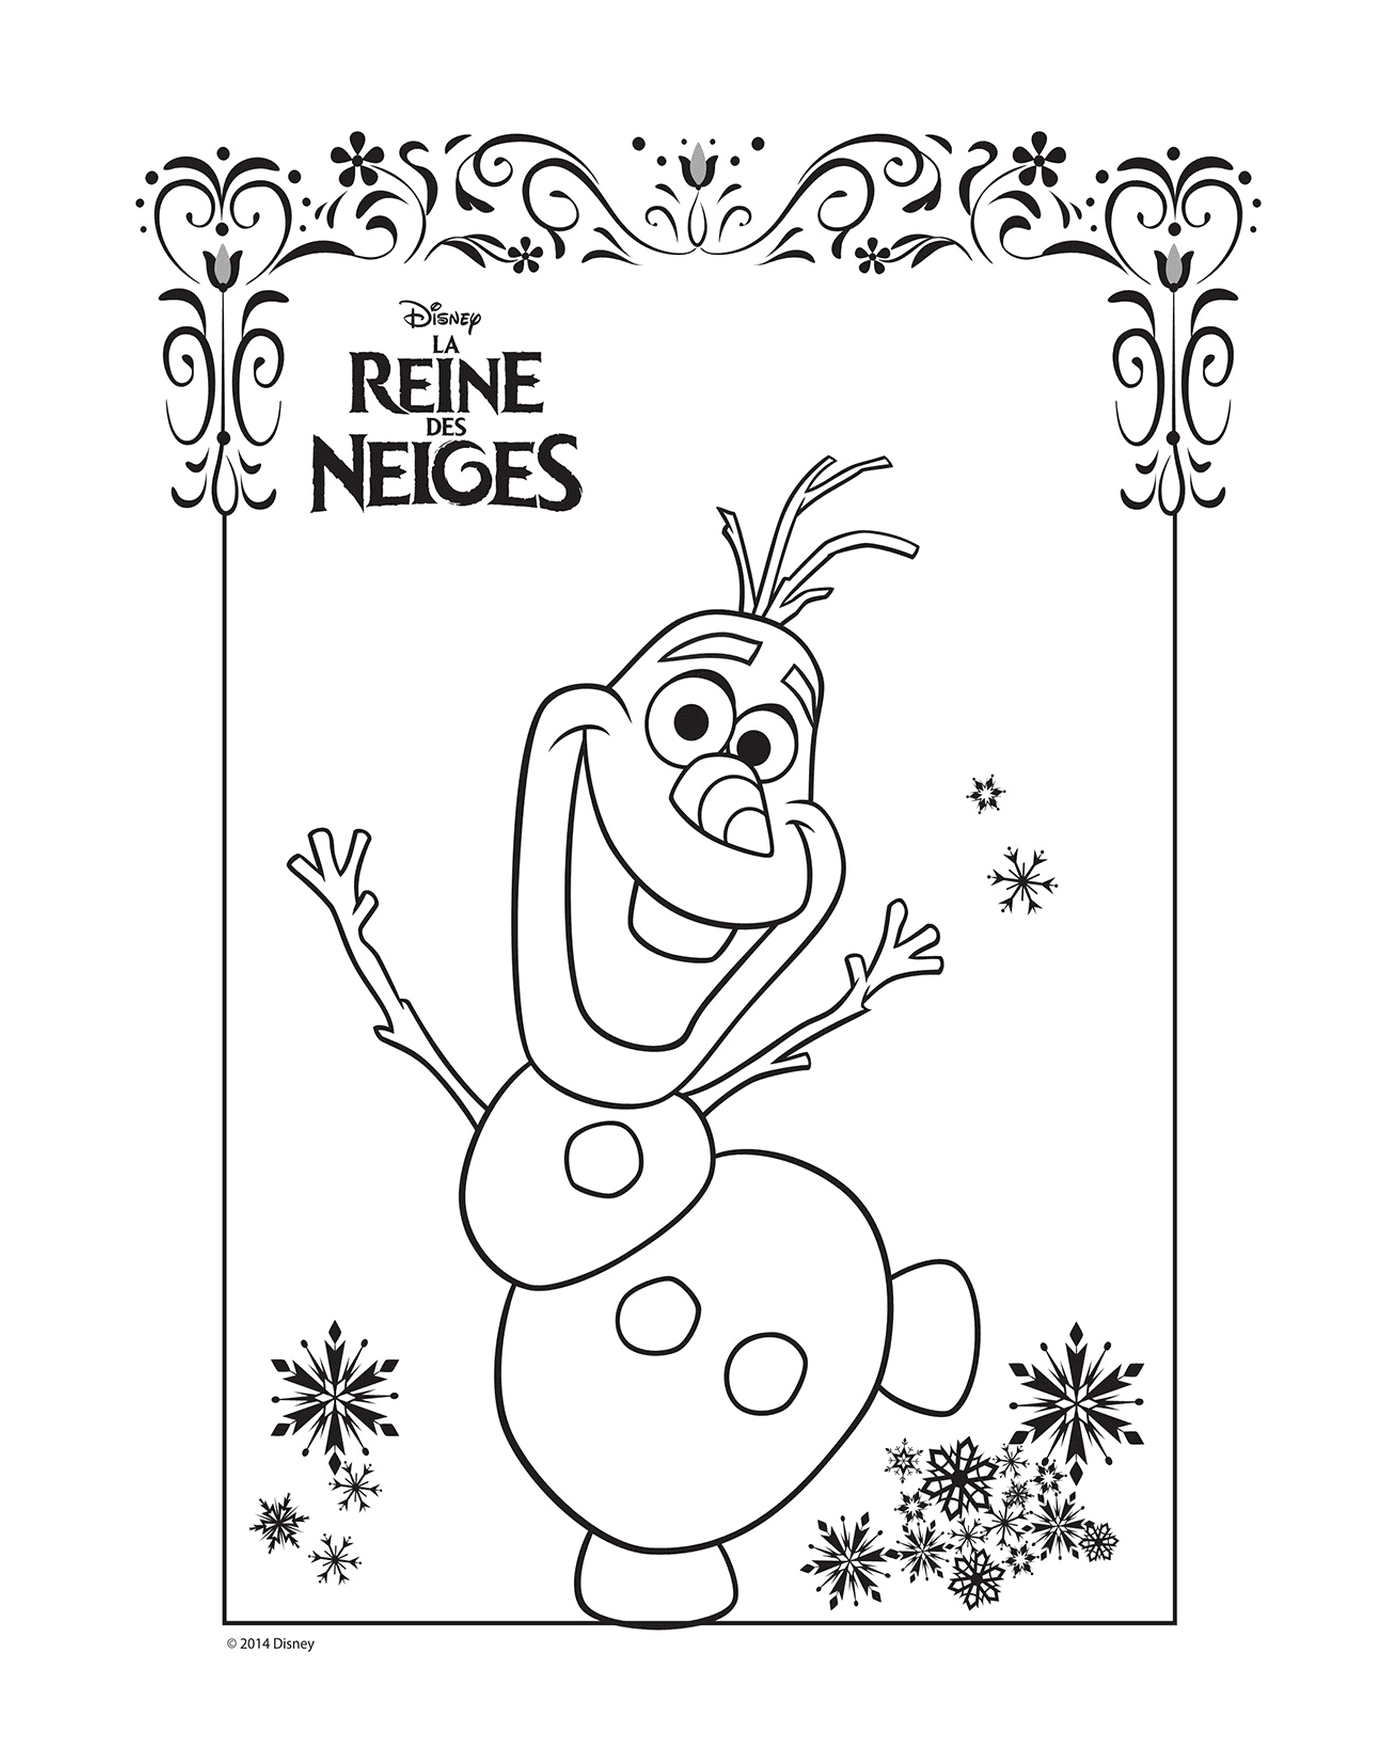   Olaf, La Reine des Neiges 